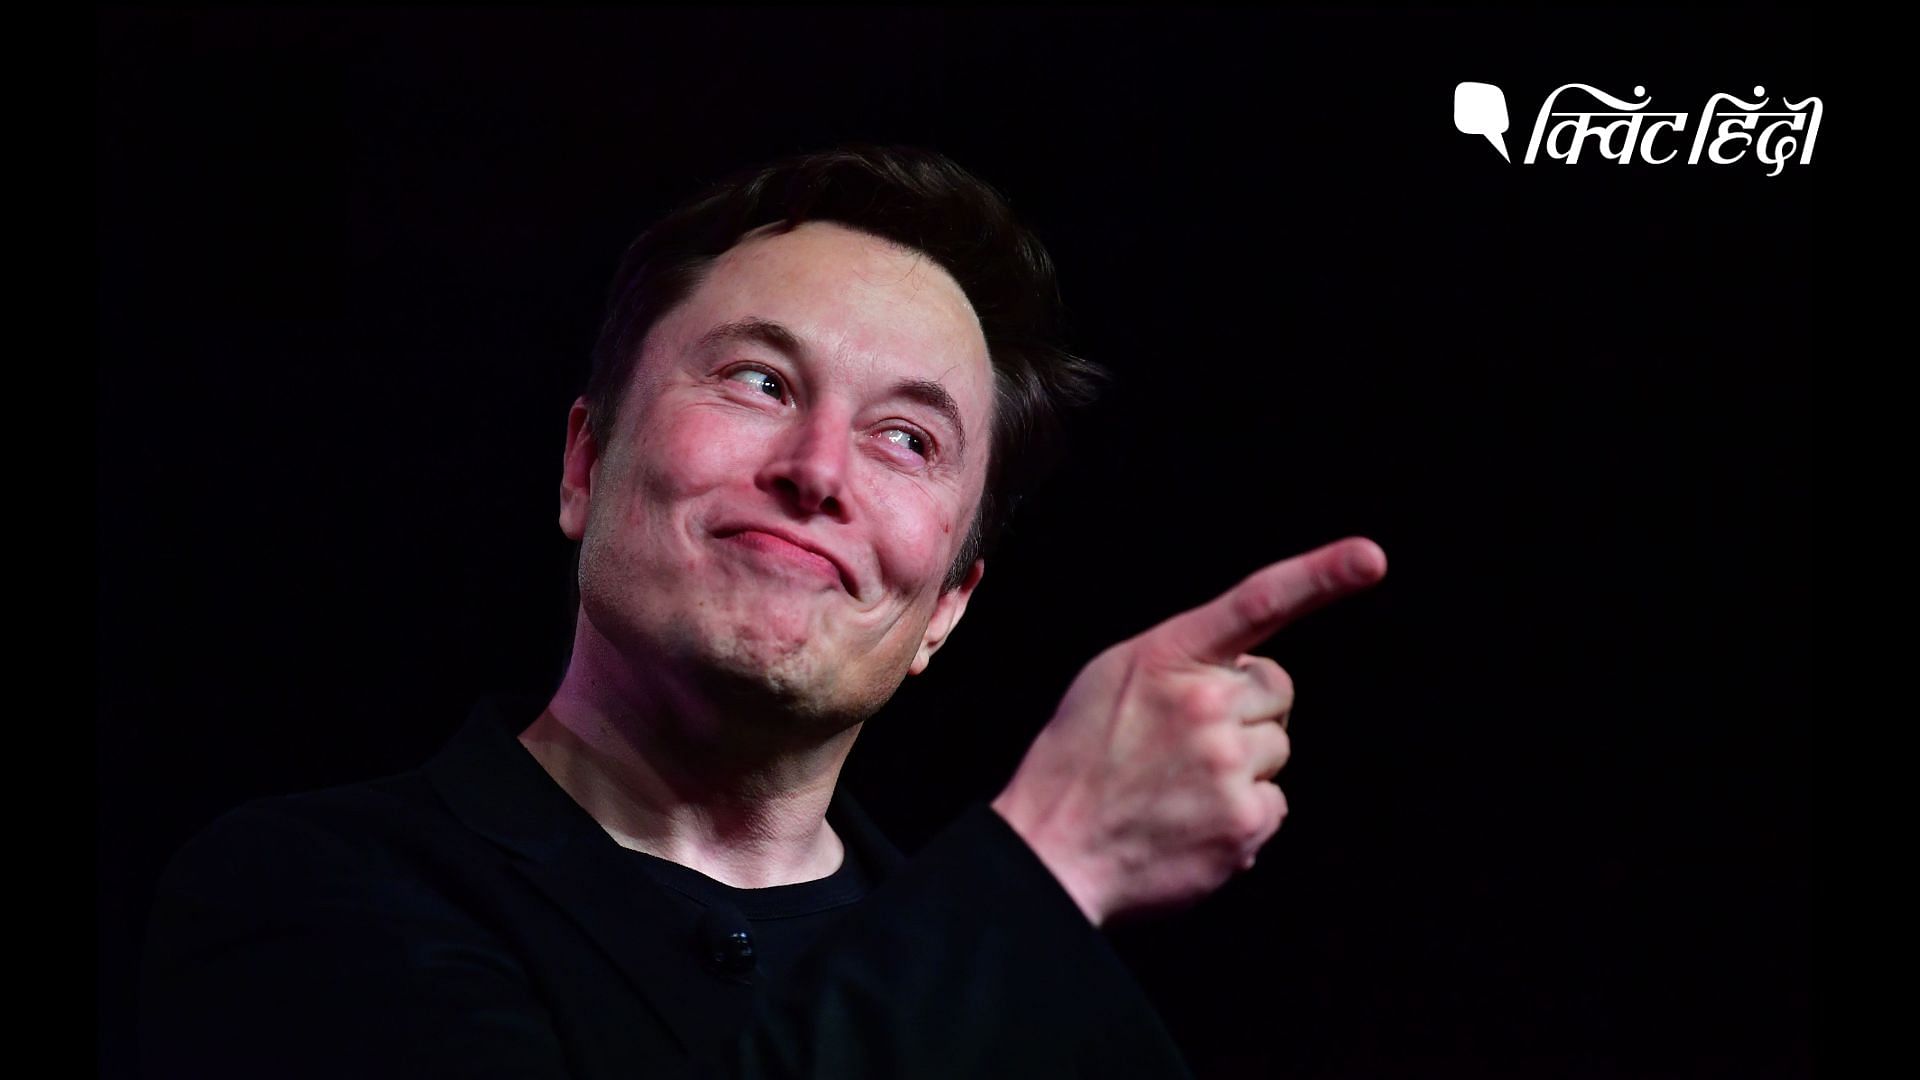 <div class="paragraphs"><p>Elon Musk की संपत्ति में $50 बिलियन का इजाफा, फिर बने दुनिया के सबसे अमीर आदमी</p></div>